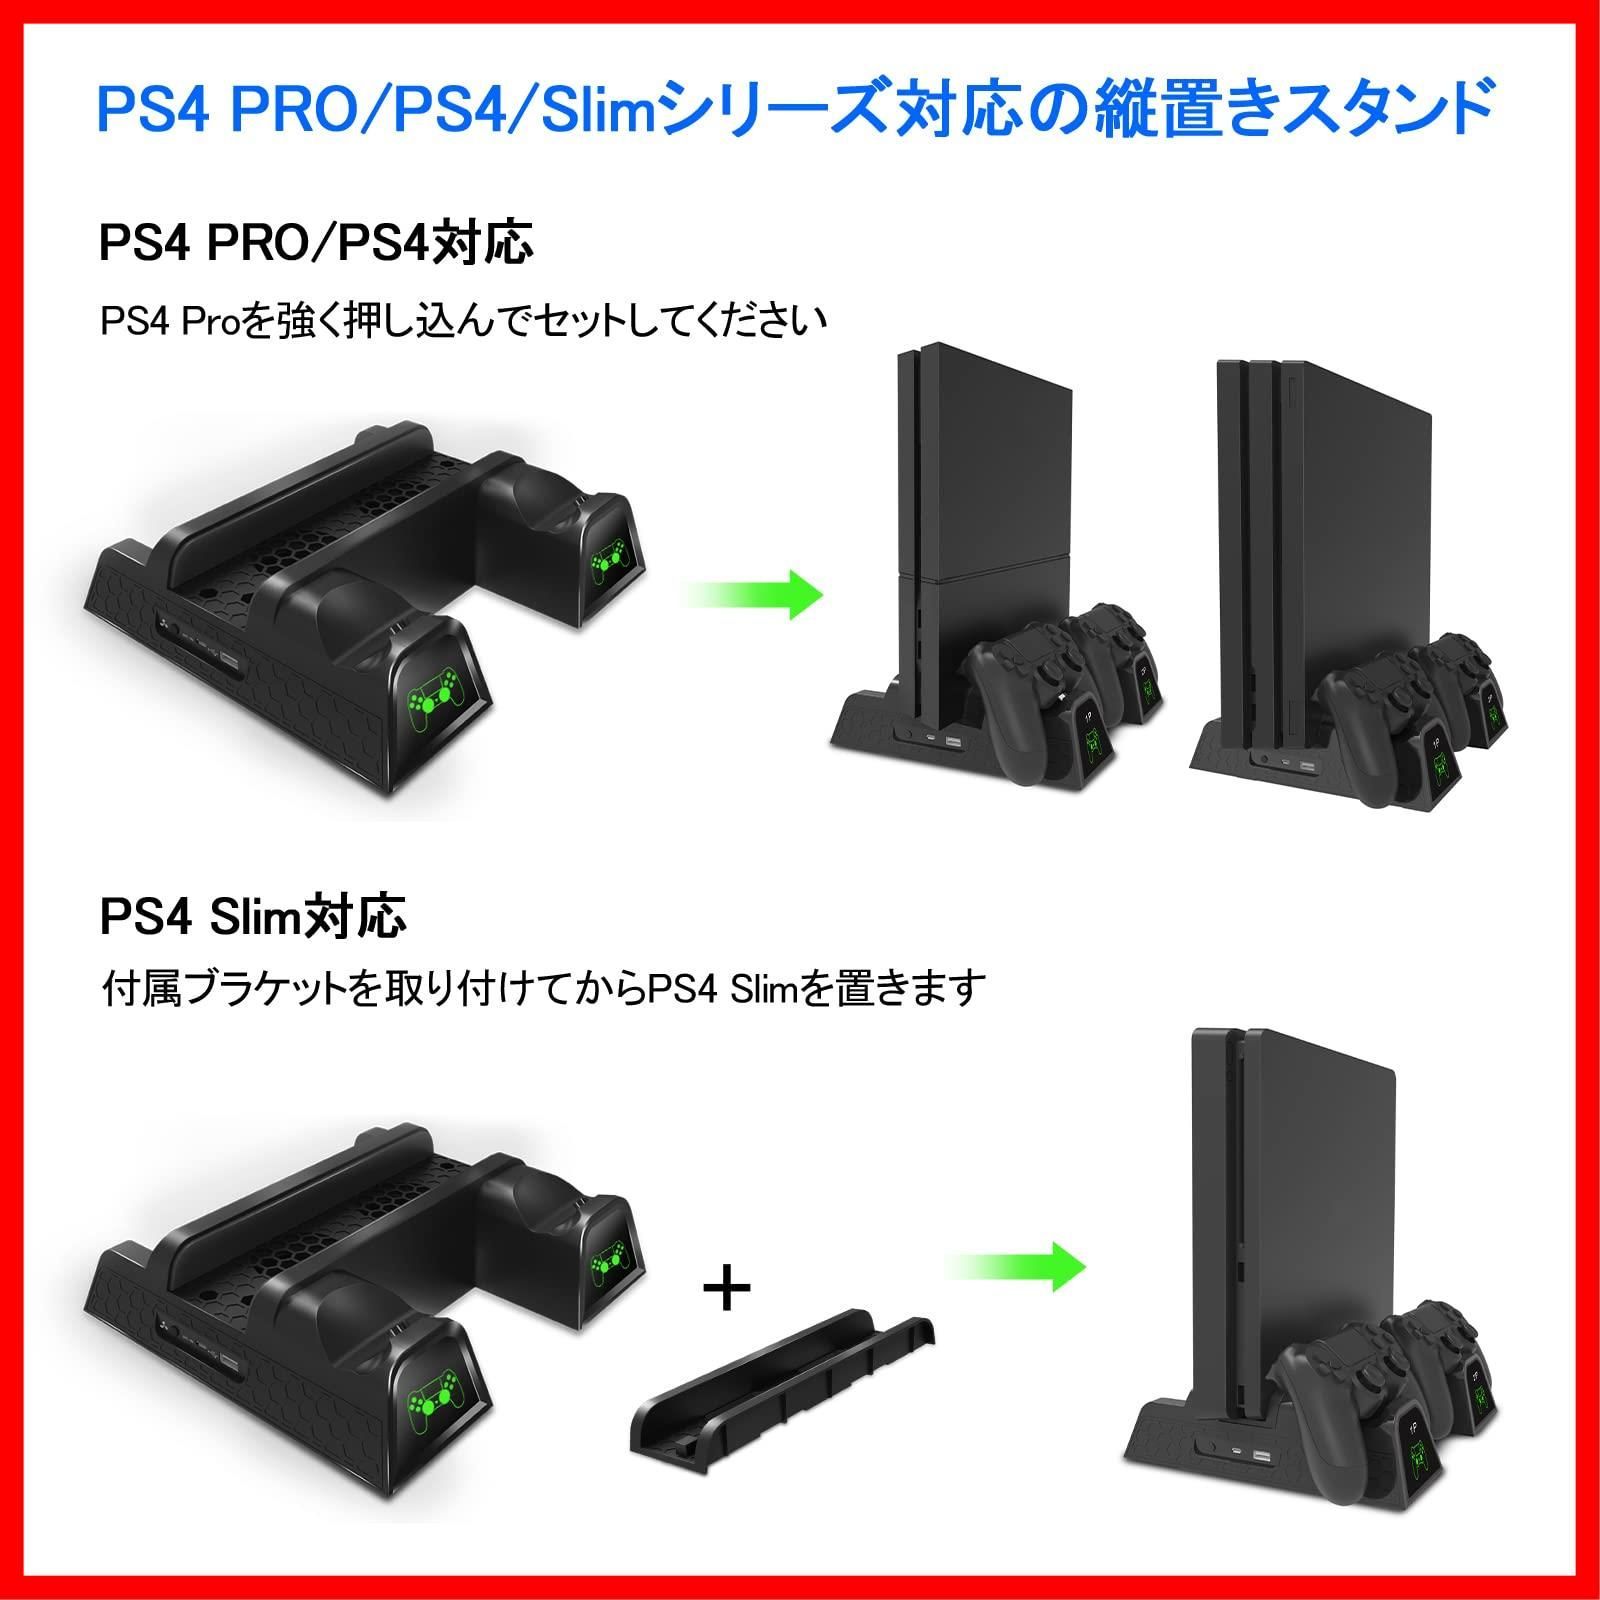 【迅速発送】PS4スタンド PS4 PRO 縦置き 本体冷却 2台PS4コントローラー充電 OIVO PS4冷却ファン ソフト収納 PS4/PS4  Pro/Slim/スリム 高互換性 LED指示ランプ付